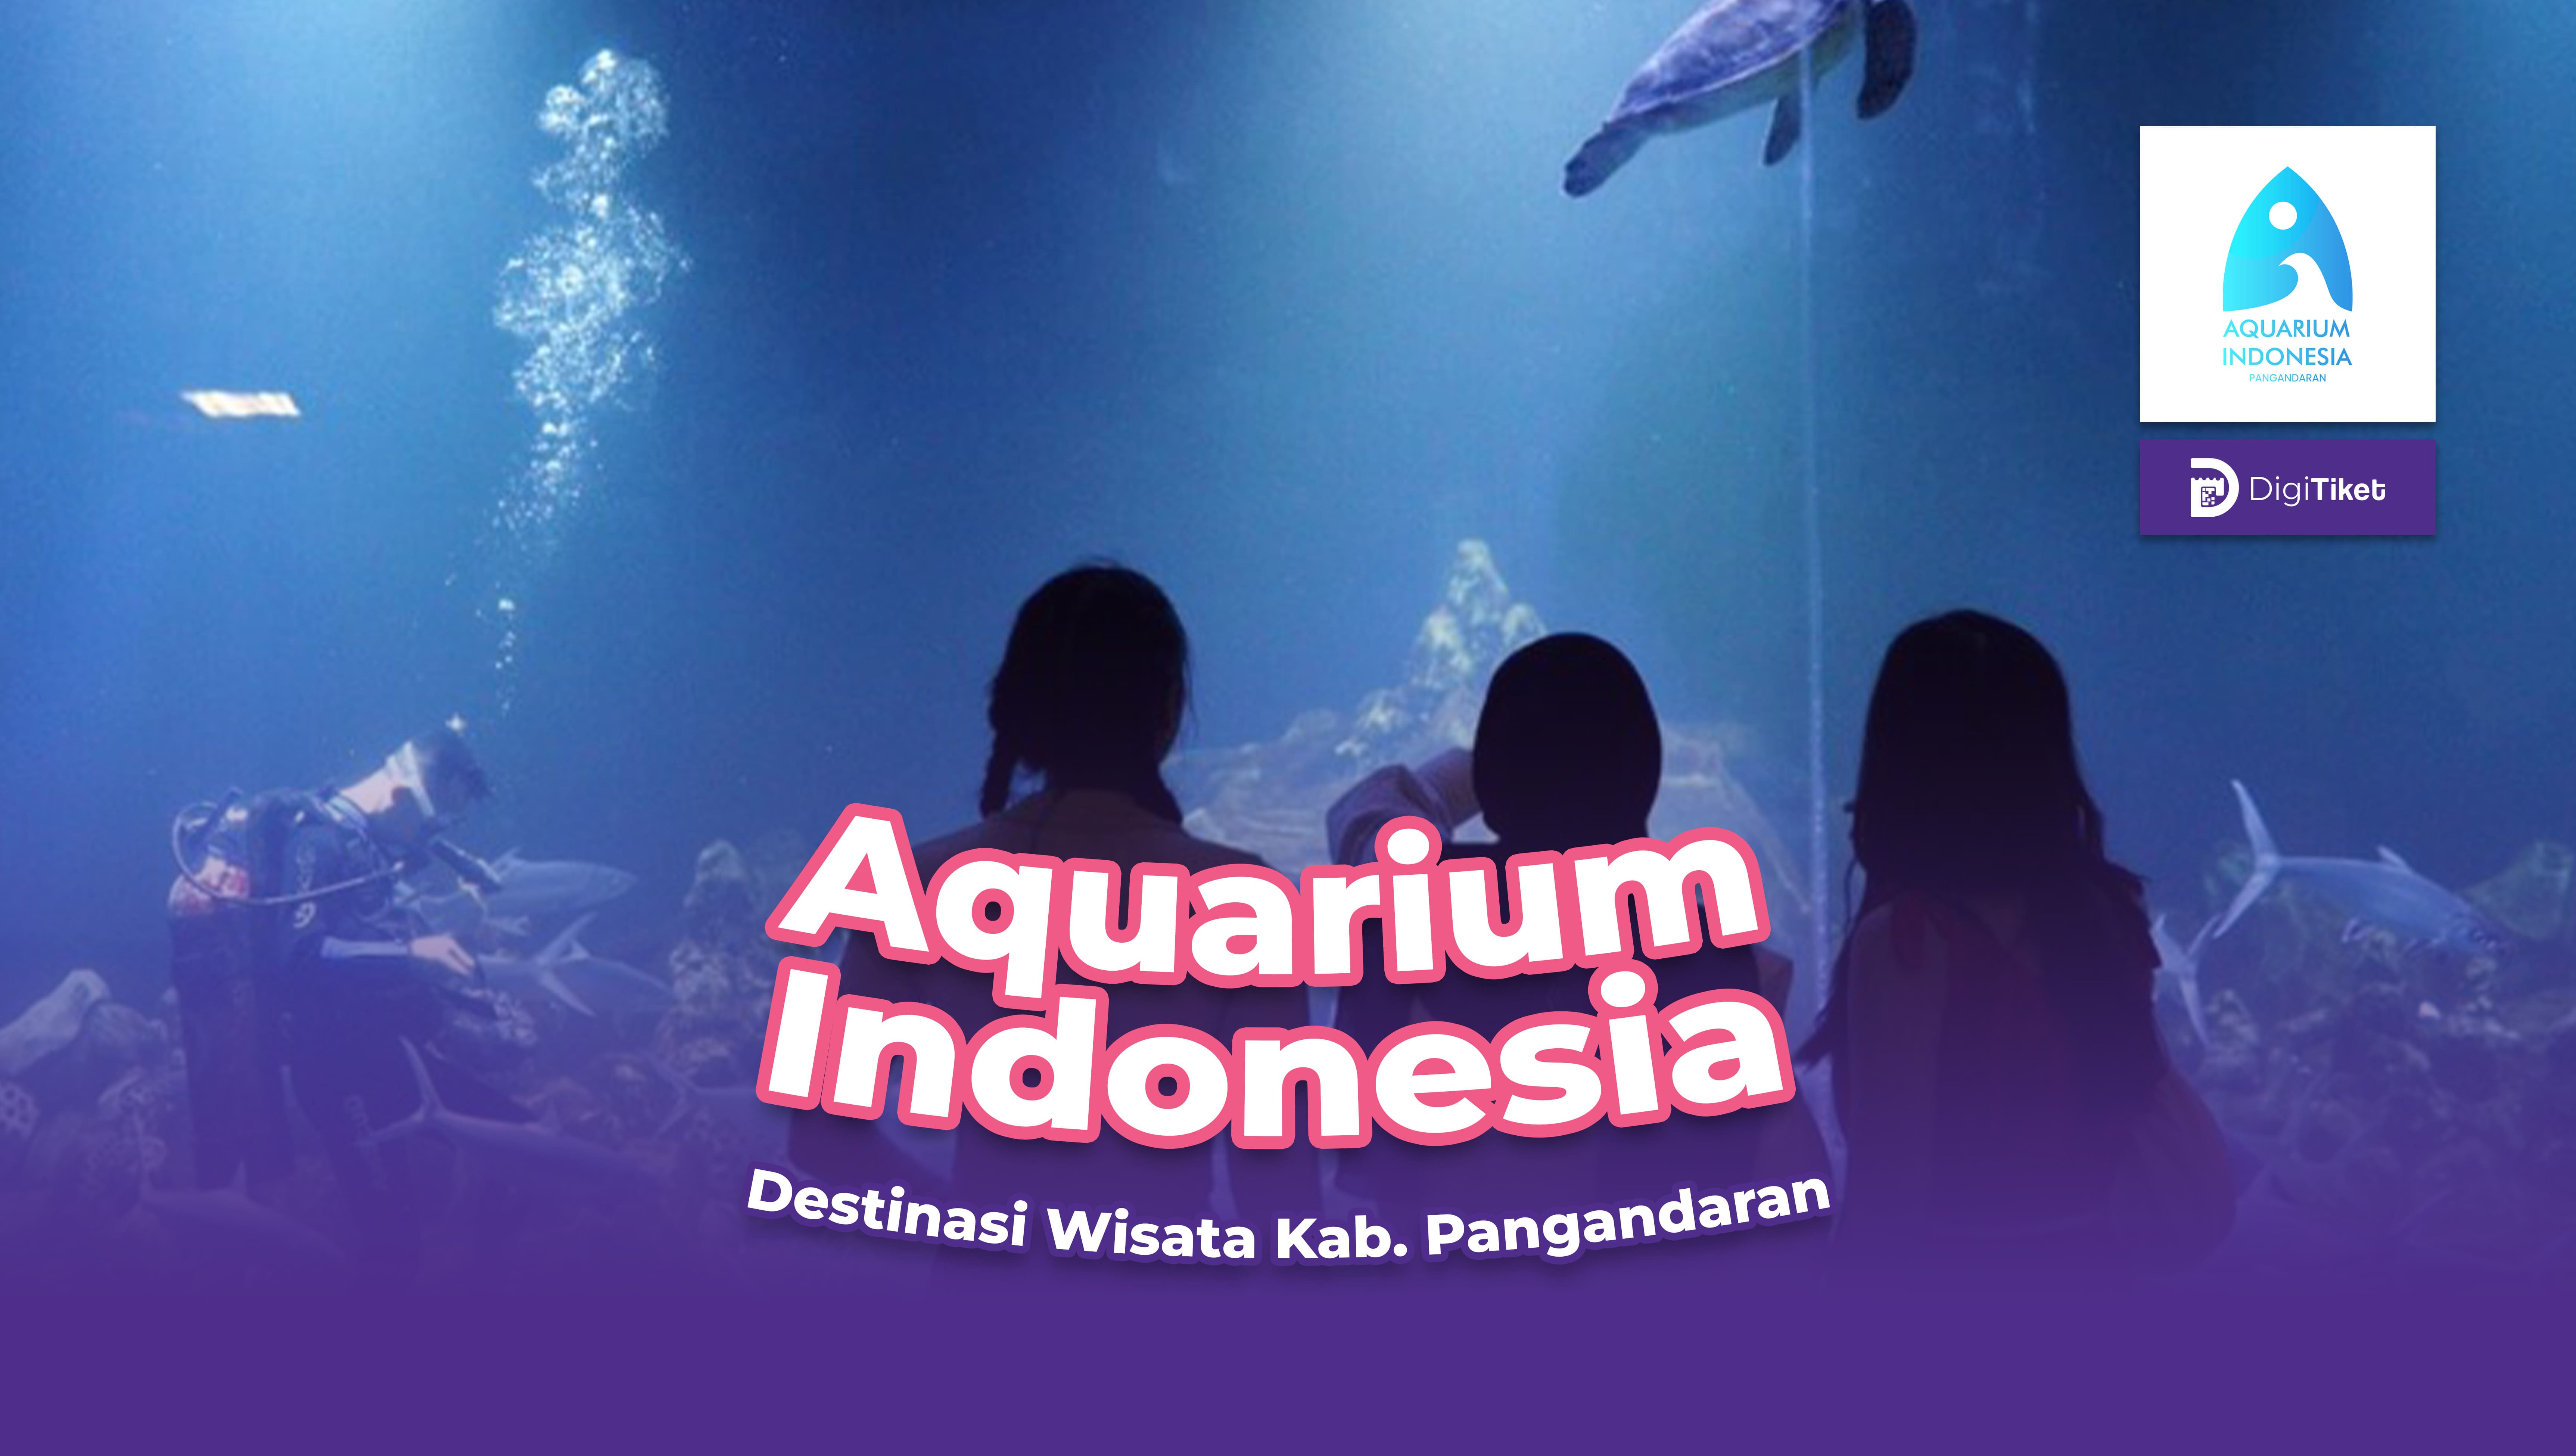 Aquarium Indonesia